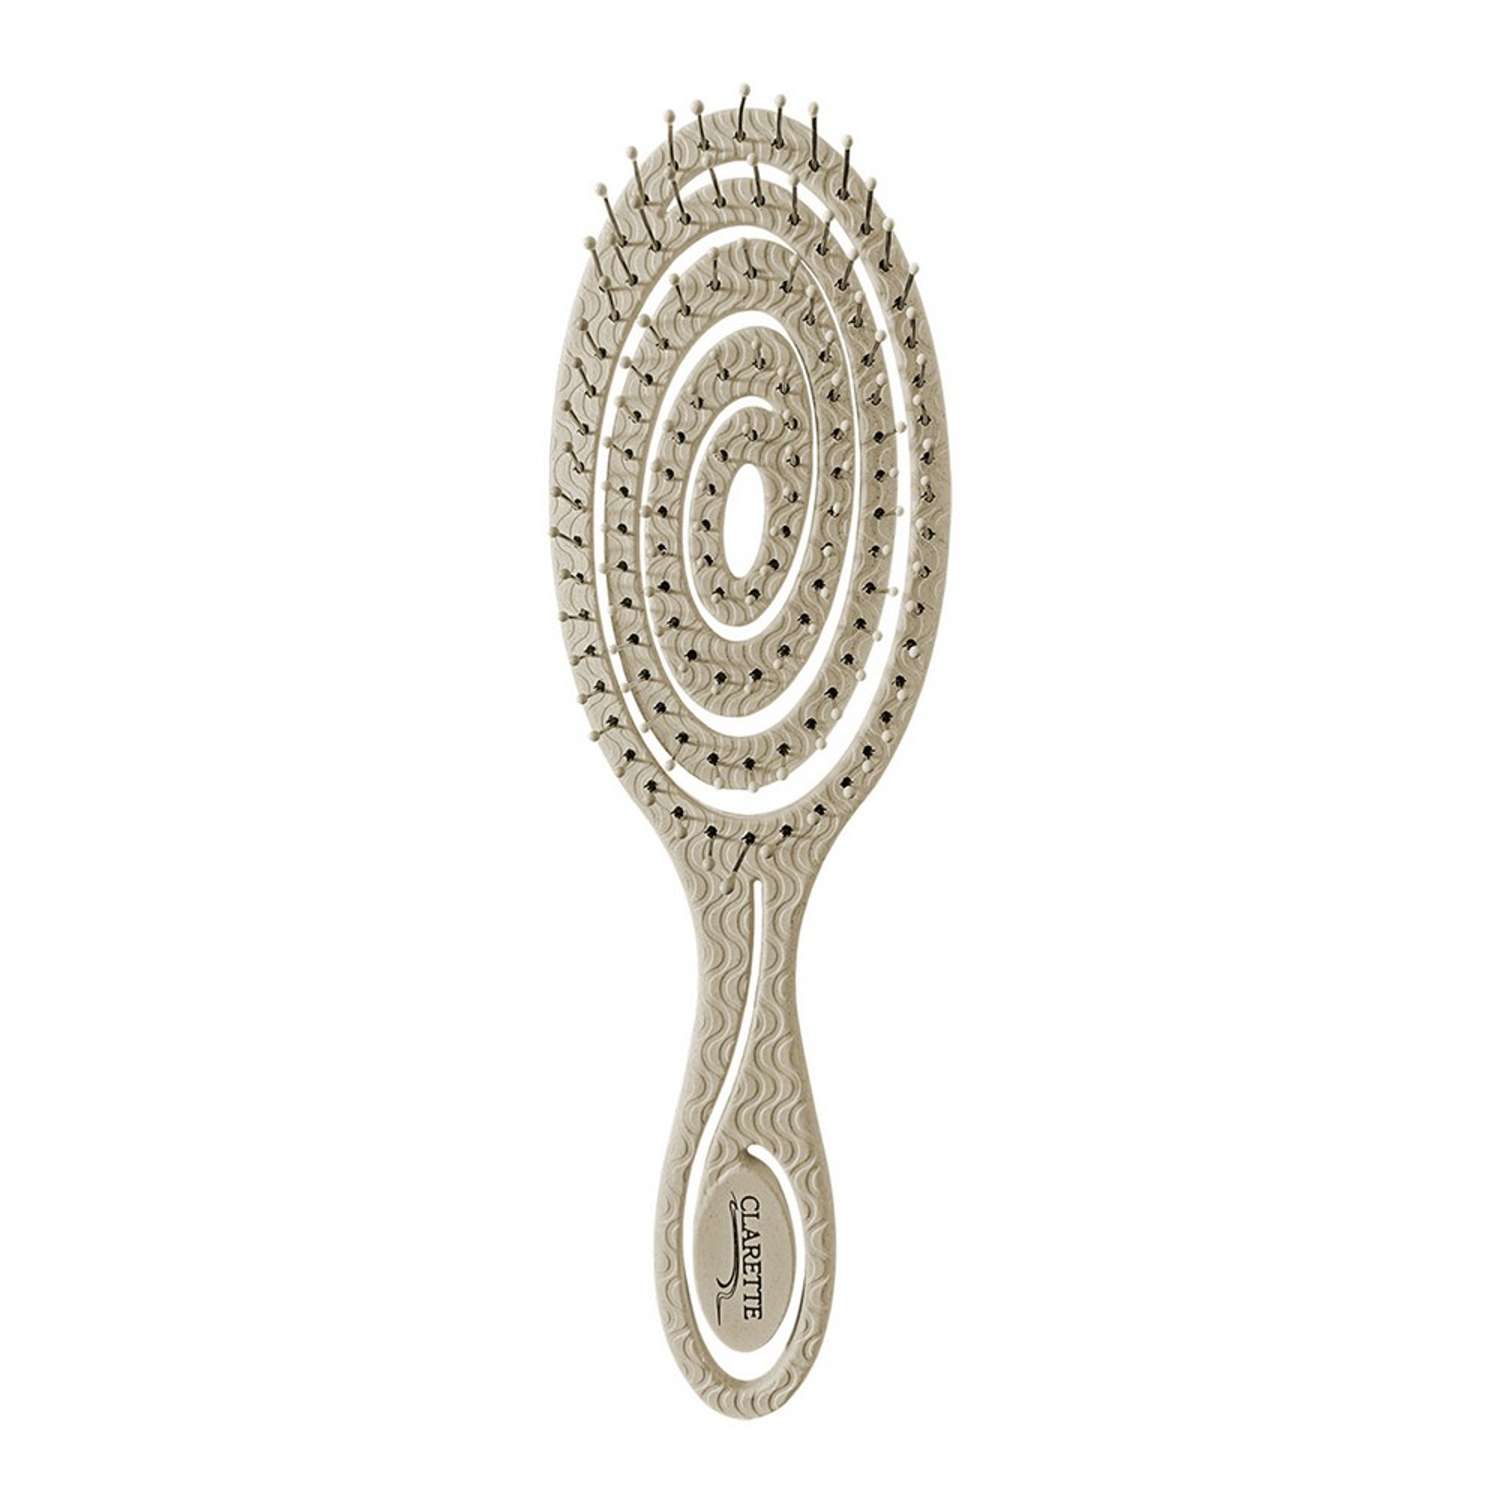 Расческа для волос Clarette спиральная из натуральной соломы пшеницы - фото 1